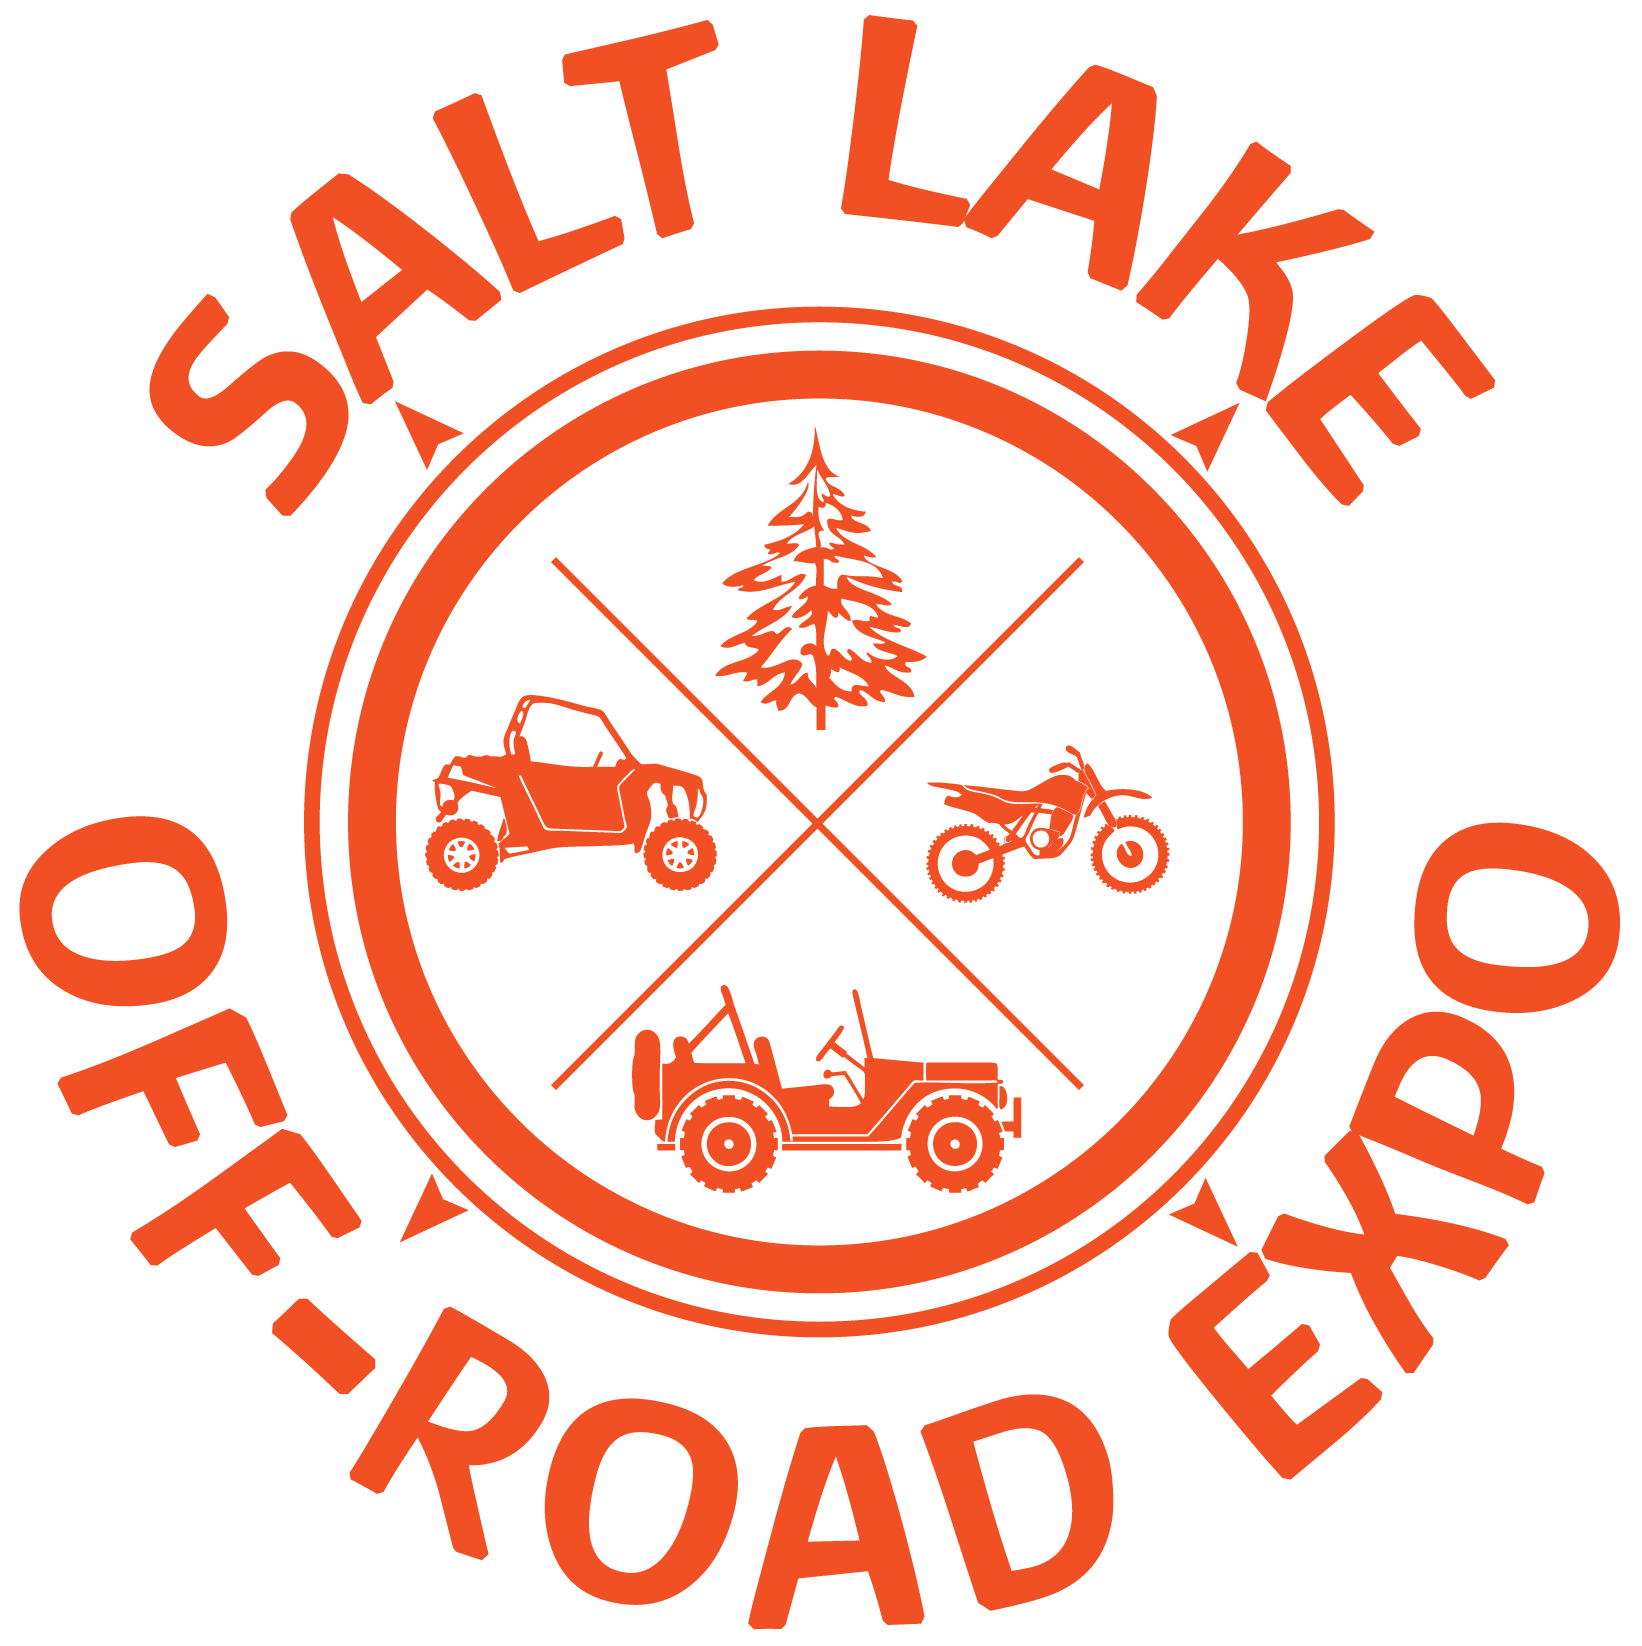 5th Annual Salt Lake